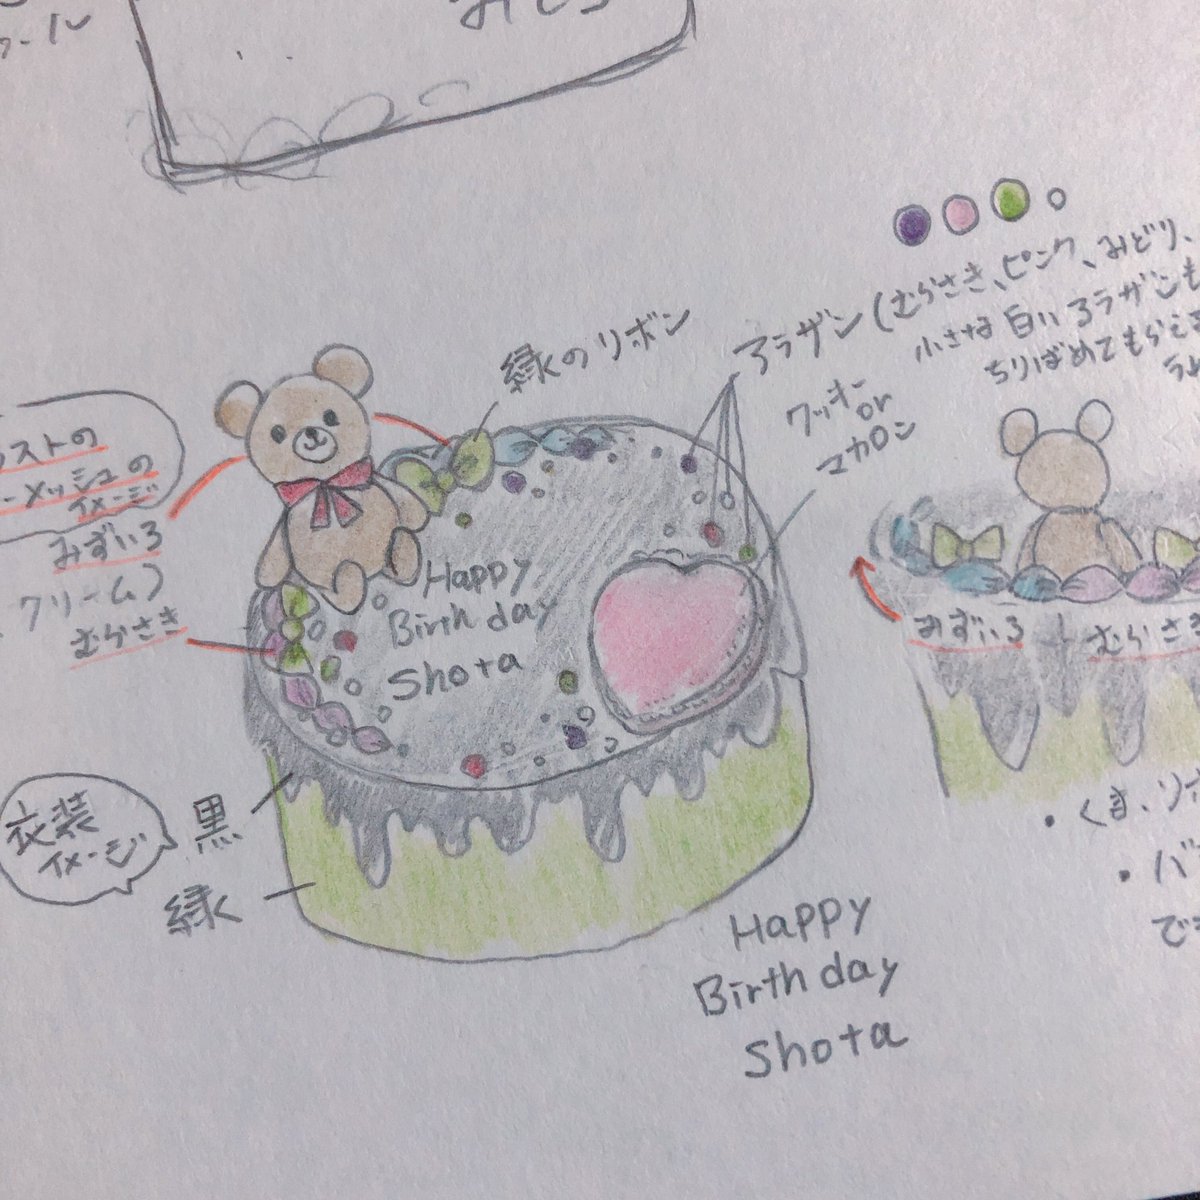 翔太Pの妹が誕生日気合い入れたいとの事だったので、ケーキのデザインをちょっとお手伝いしました。妹が頑張ってガシャした思い出深いきら☆ひめ特別ライブの翔太くんイメージです!
デザインを再現してくださったケーキ屋さん本当にすごい。 